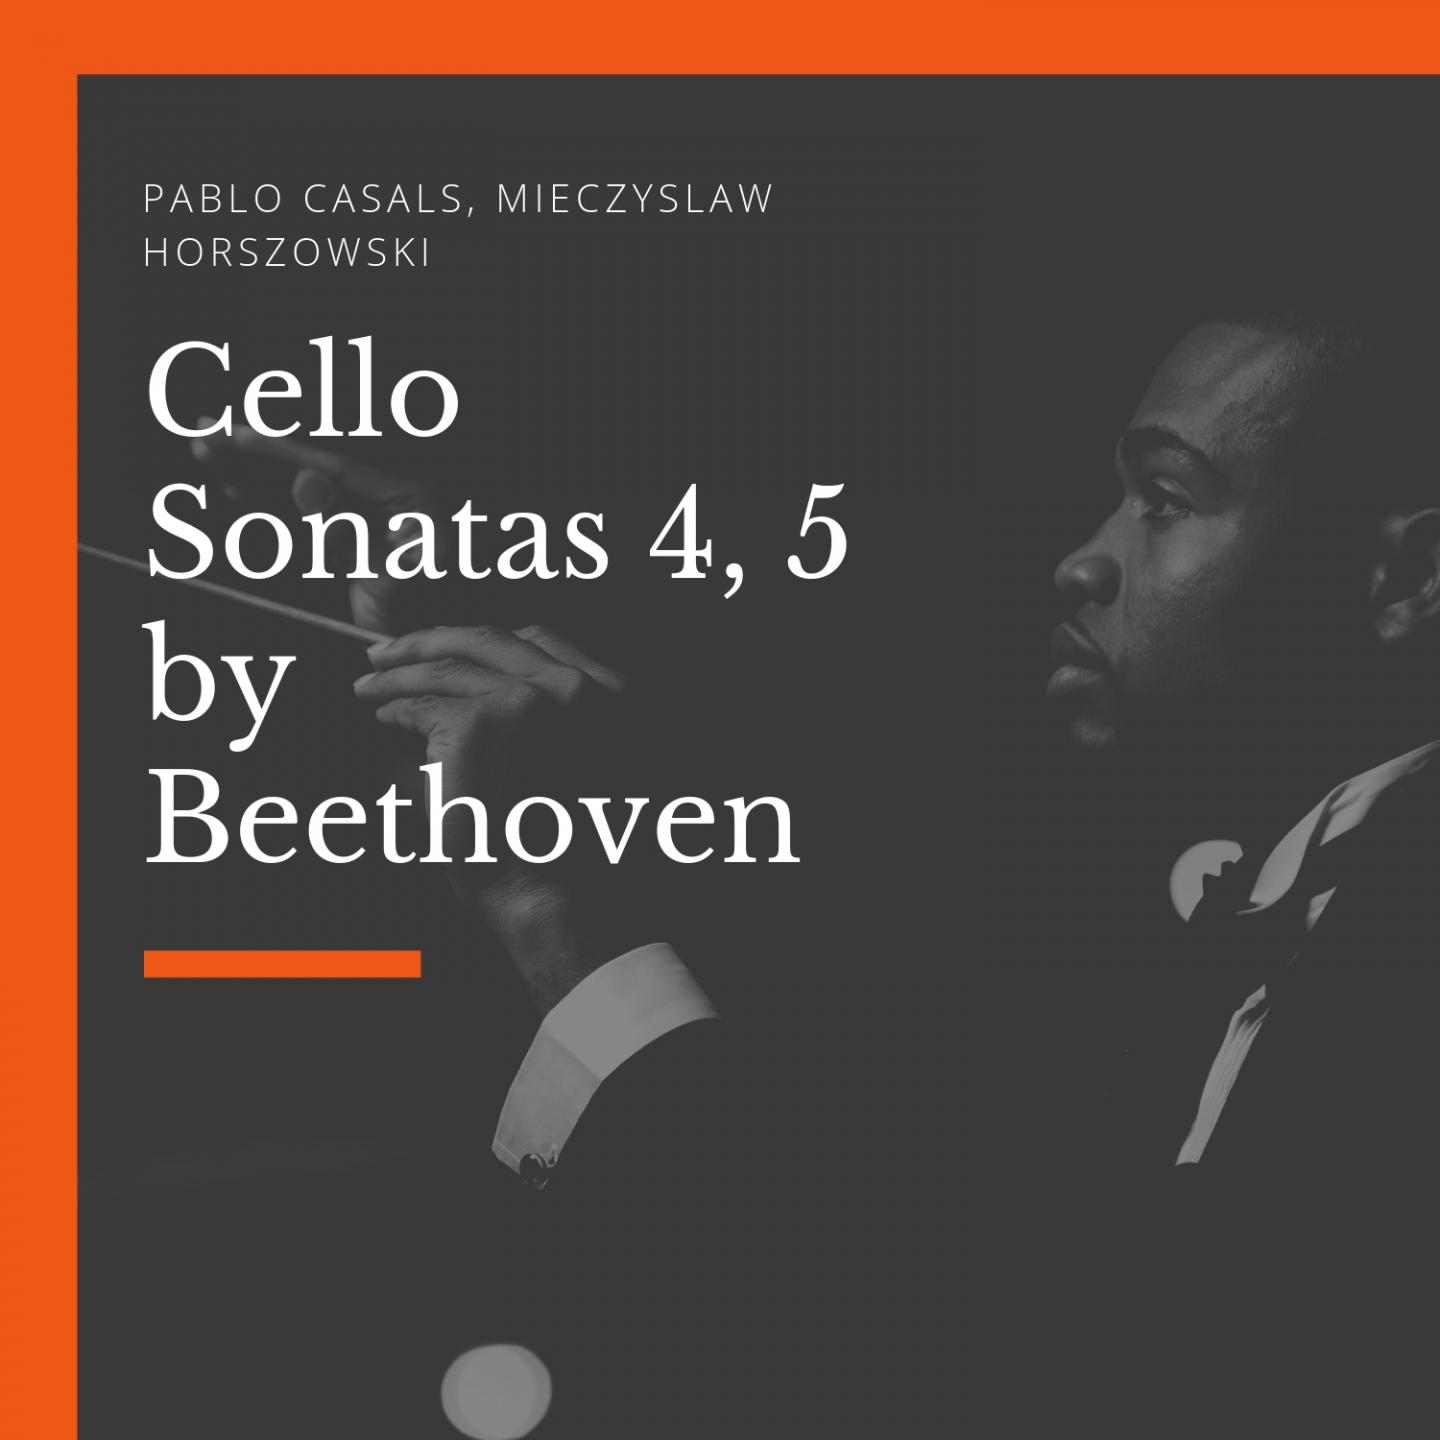 Cello Sonatas 4, 5 by Beethoven